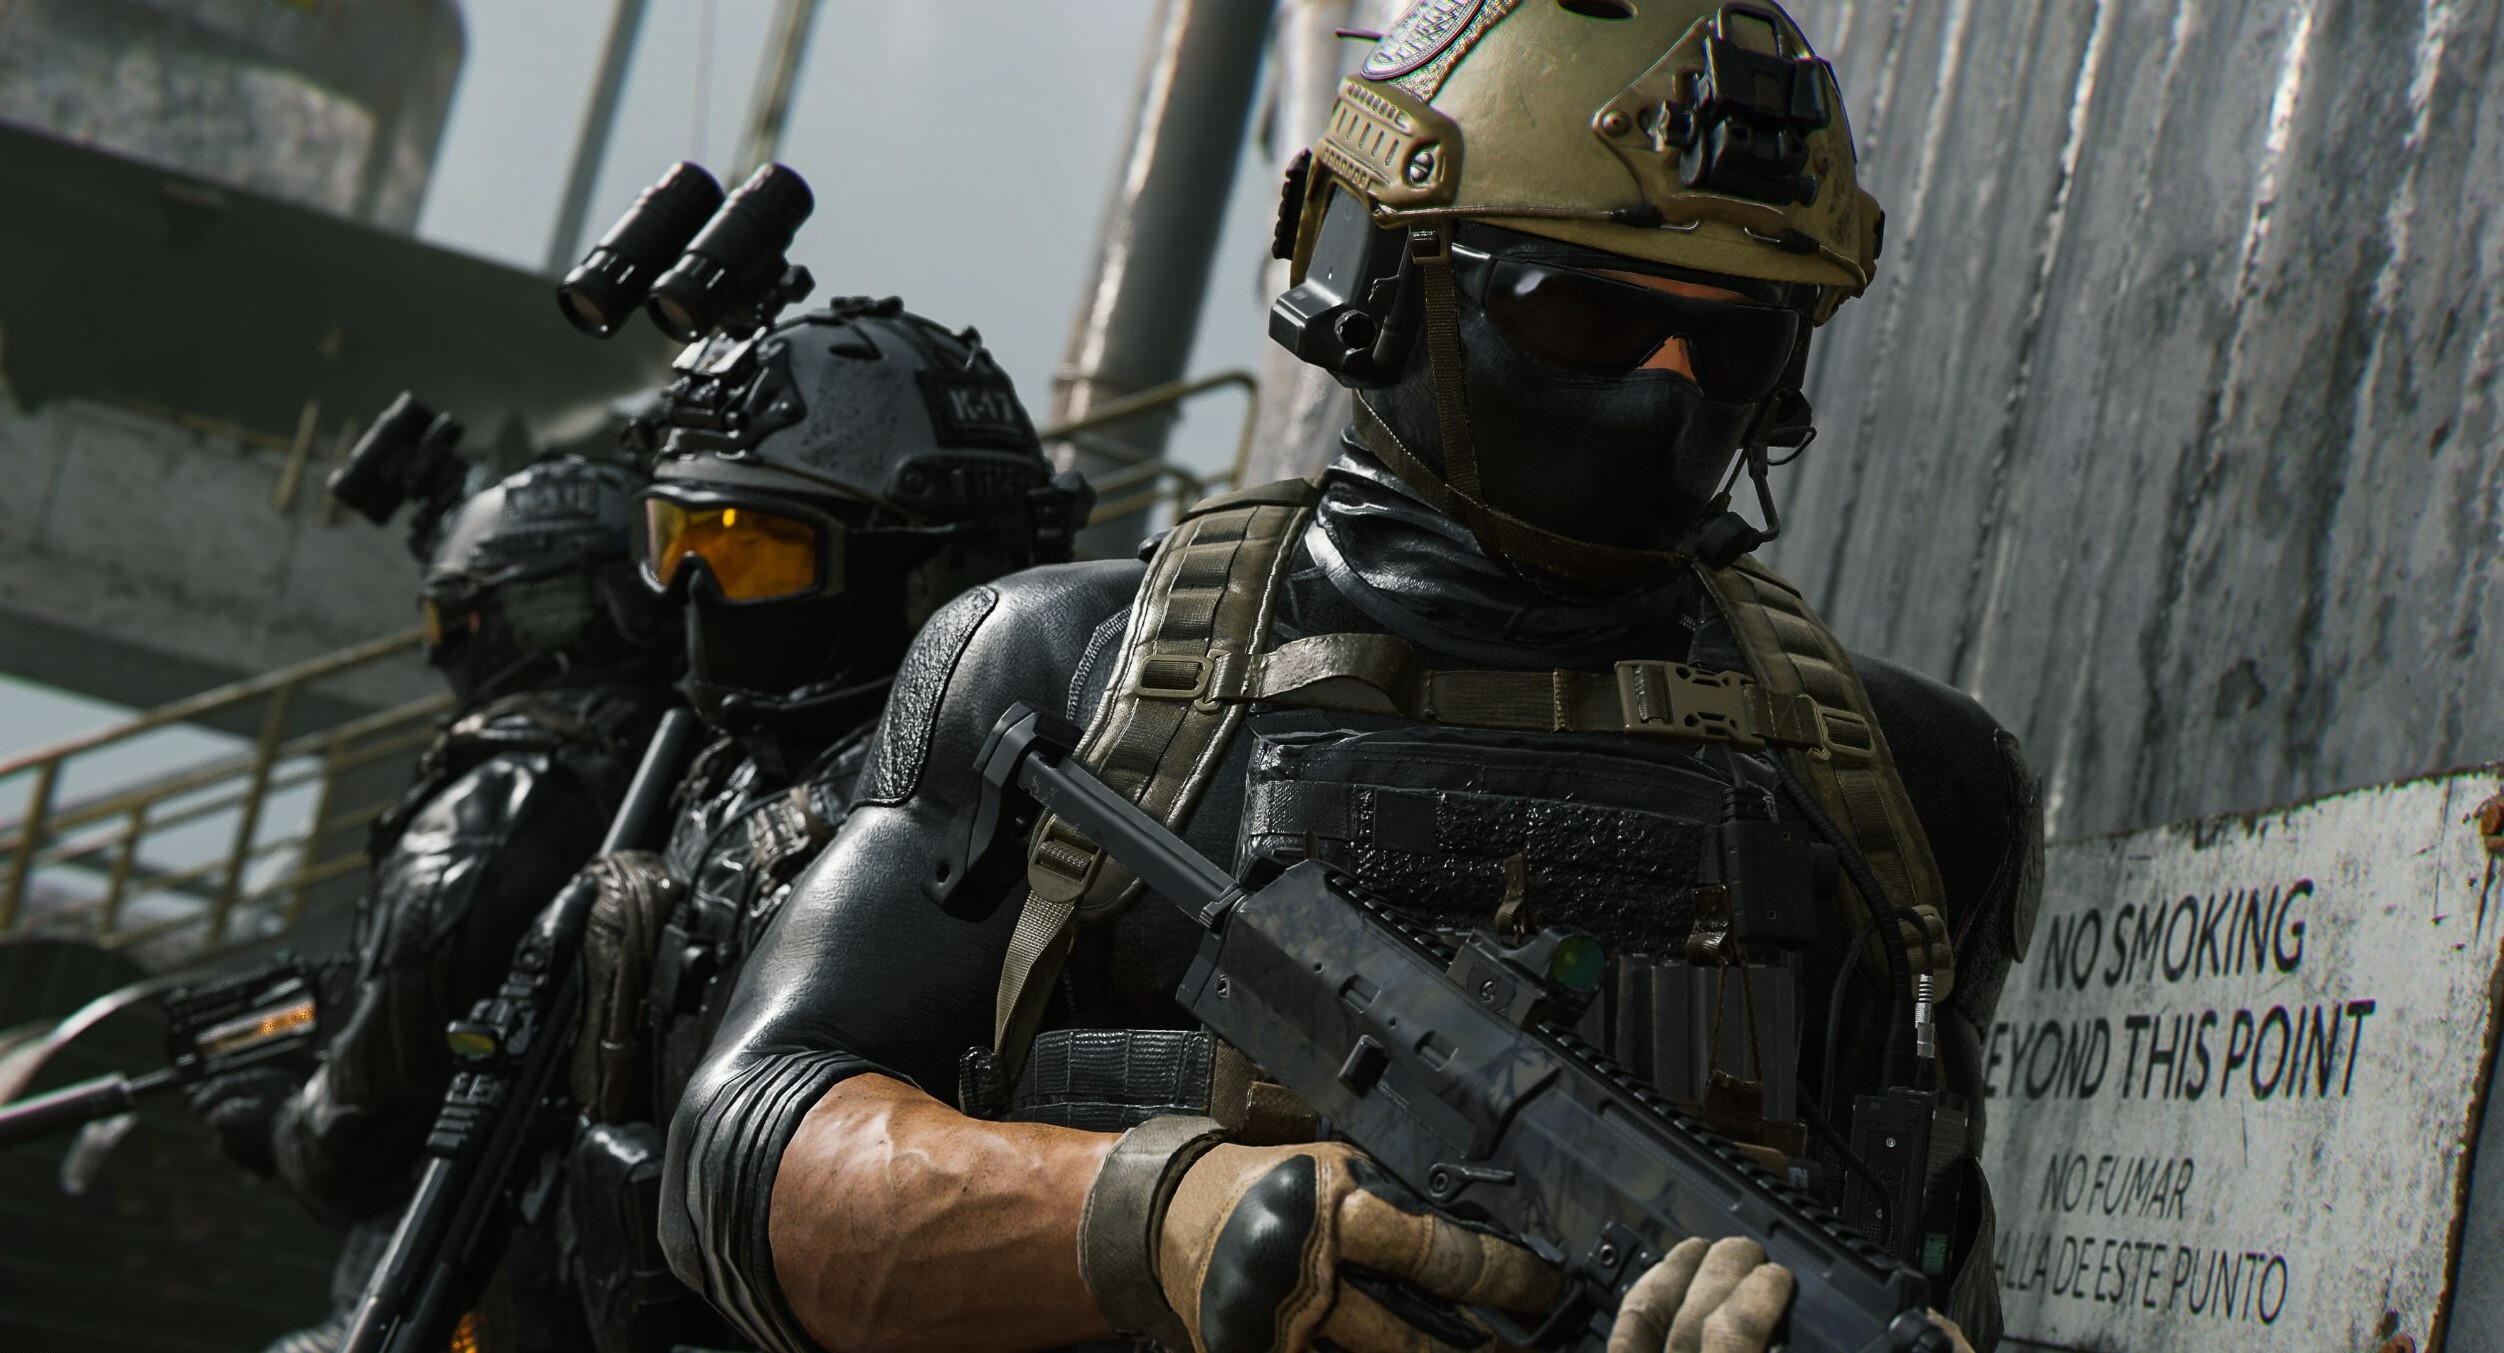 Call Of Duty: Modern Warfare 2 - Multiplayer Tips - GameSpot